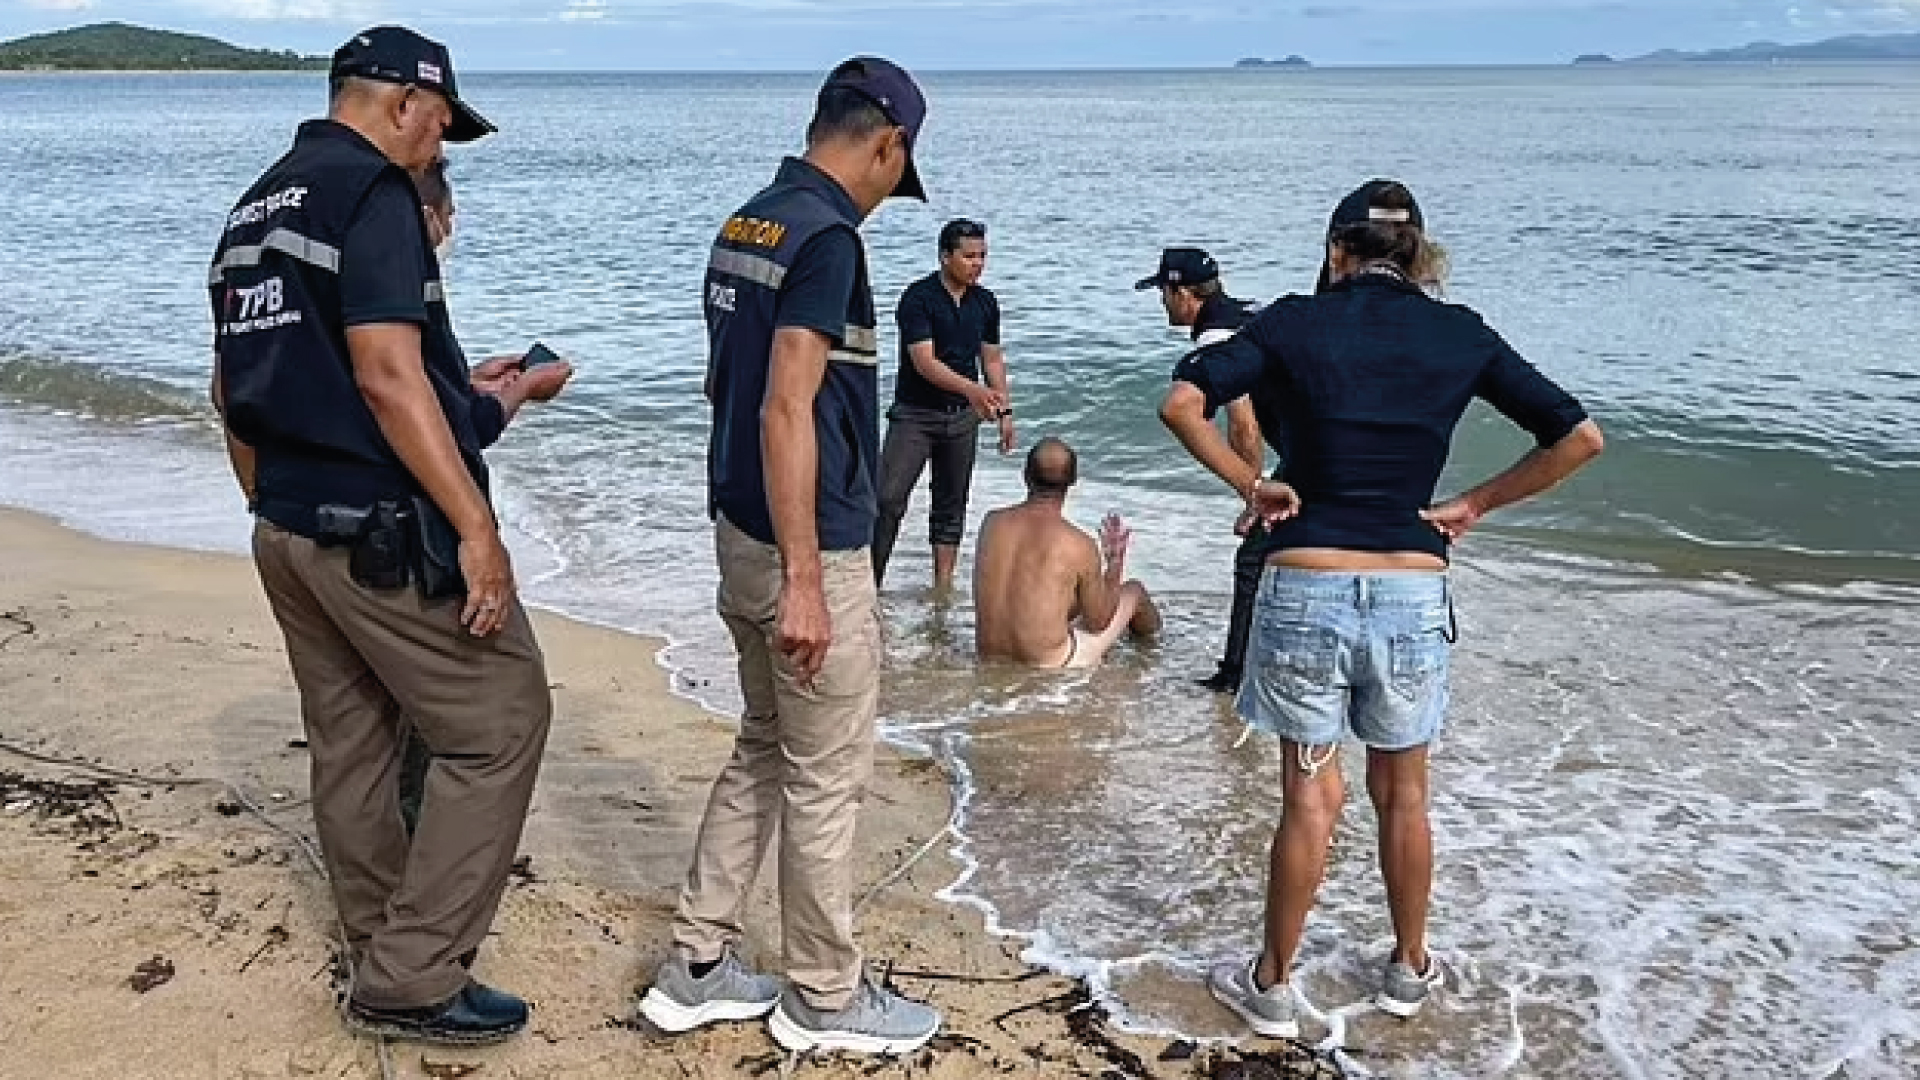 “¿Qué pasó ayer?”: Apareció desnudo en una playa de Tailandia luego de una fiesta y dice que no recuerda nada